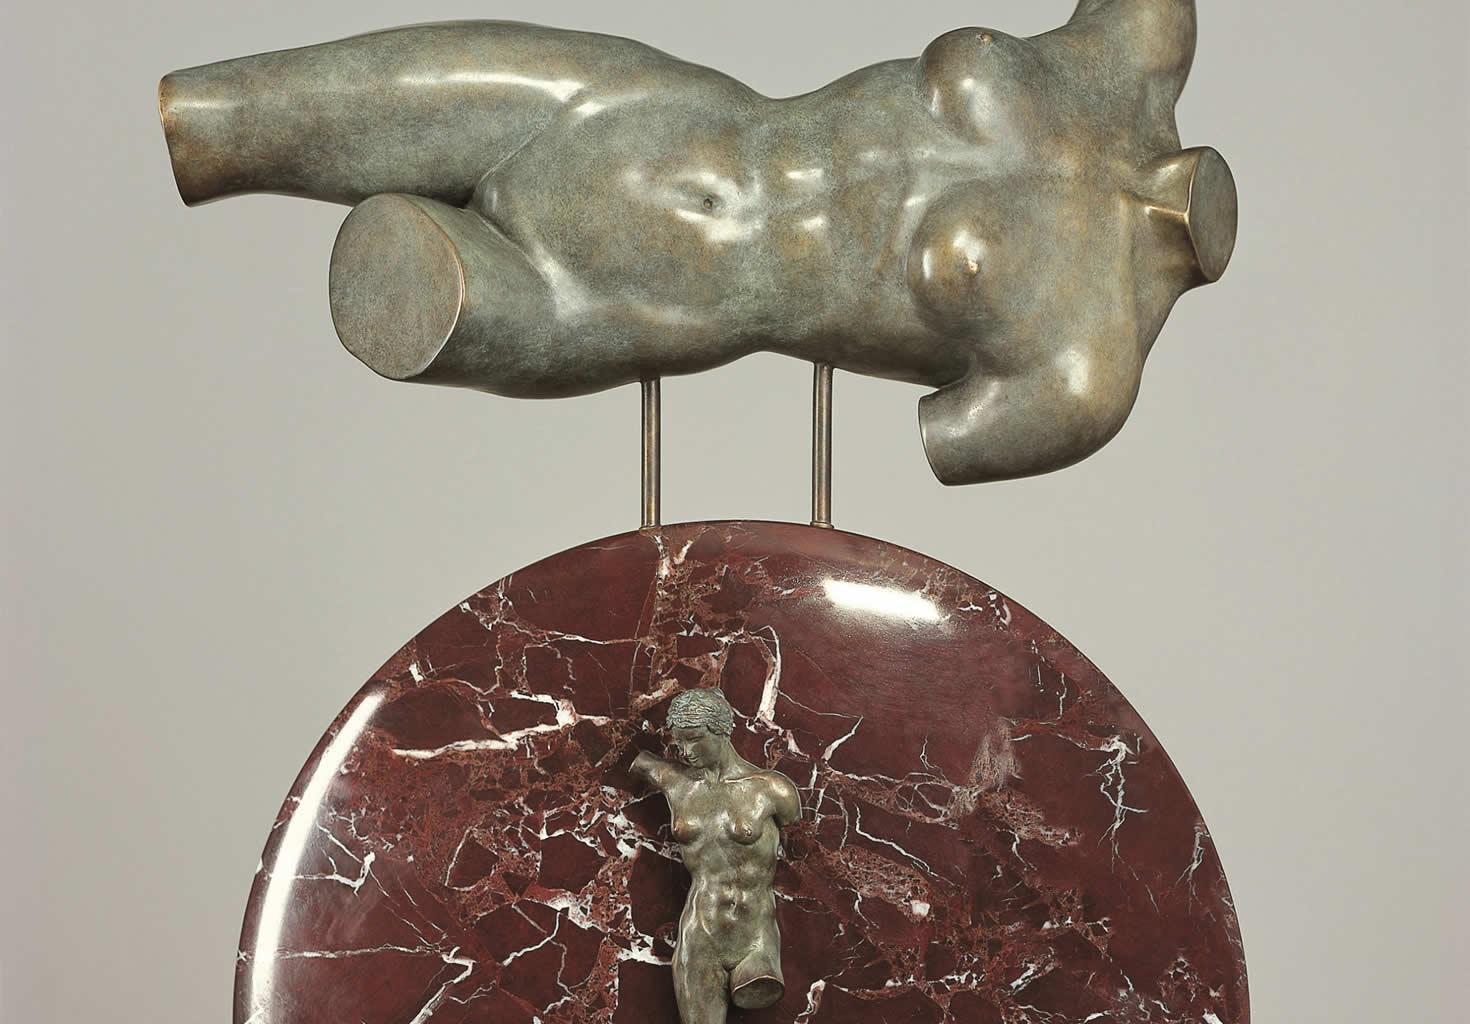 Maät Bronze Sculpture Contemporary Classic Mythology - Gold Nude Sculpture by Margot Homan